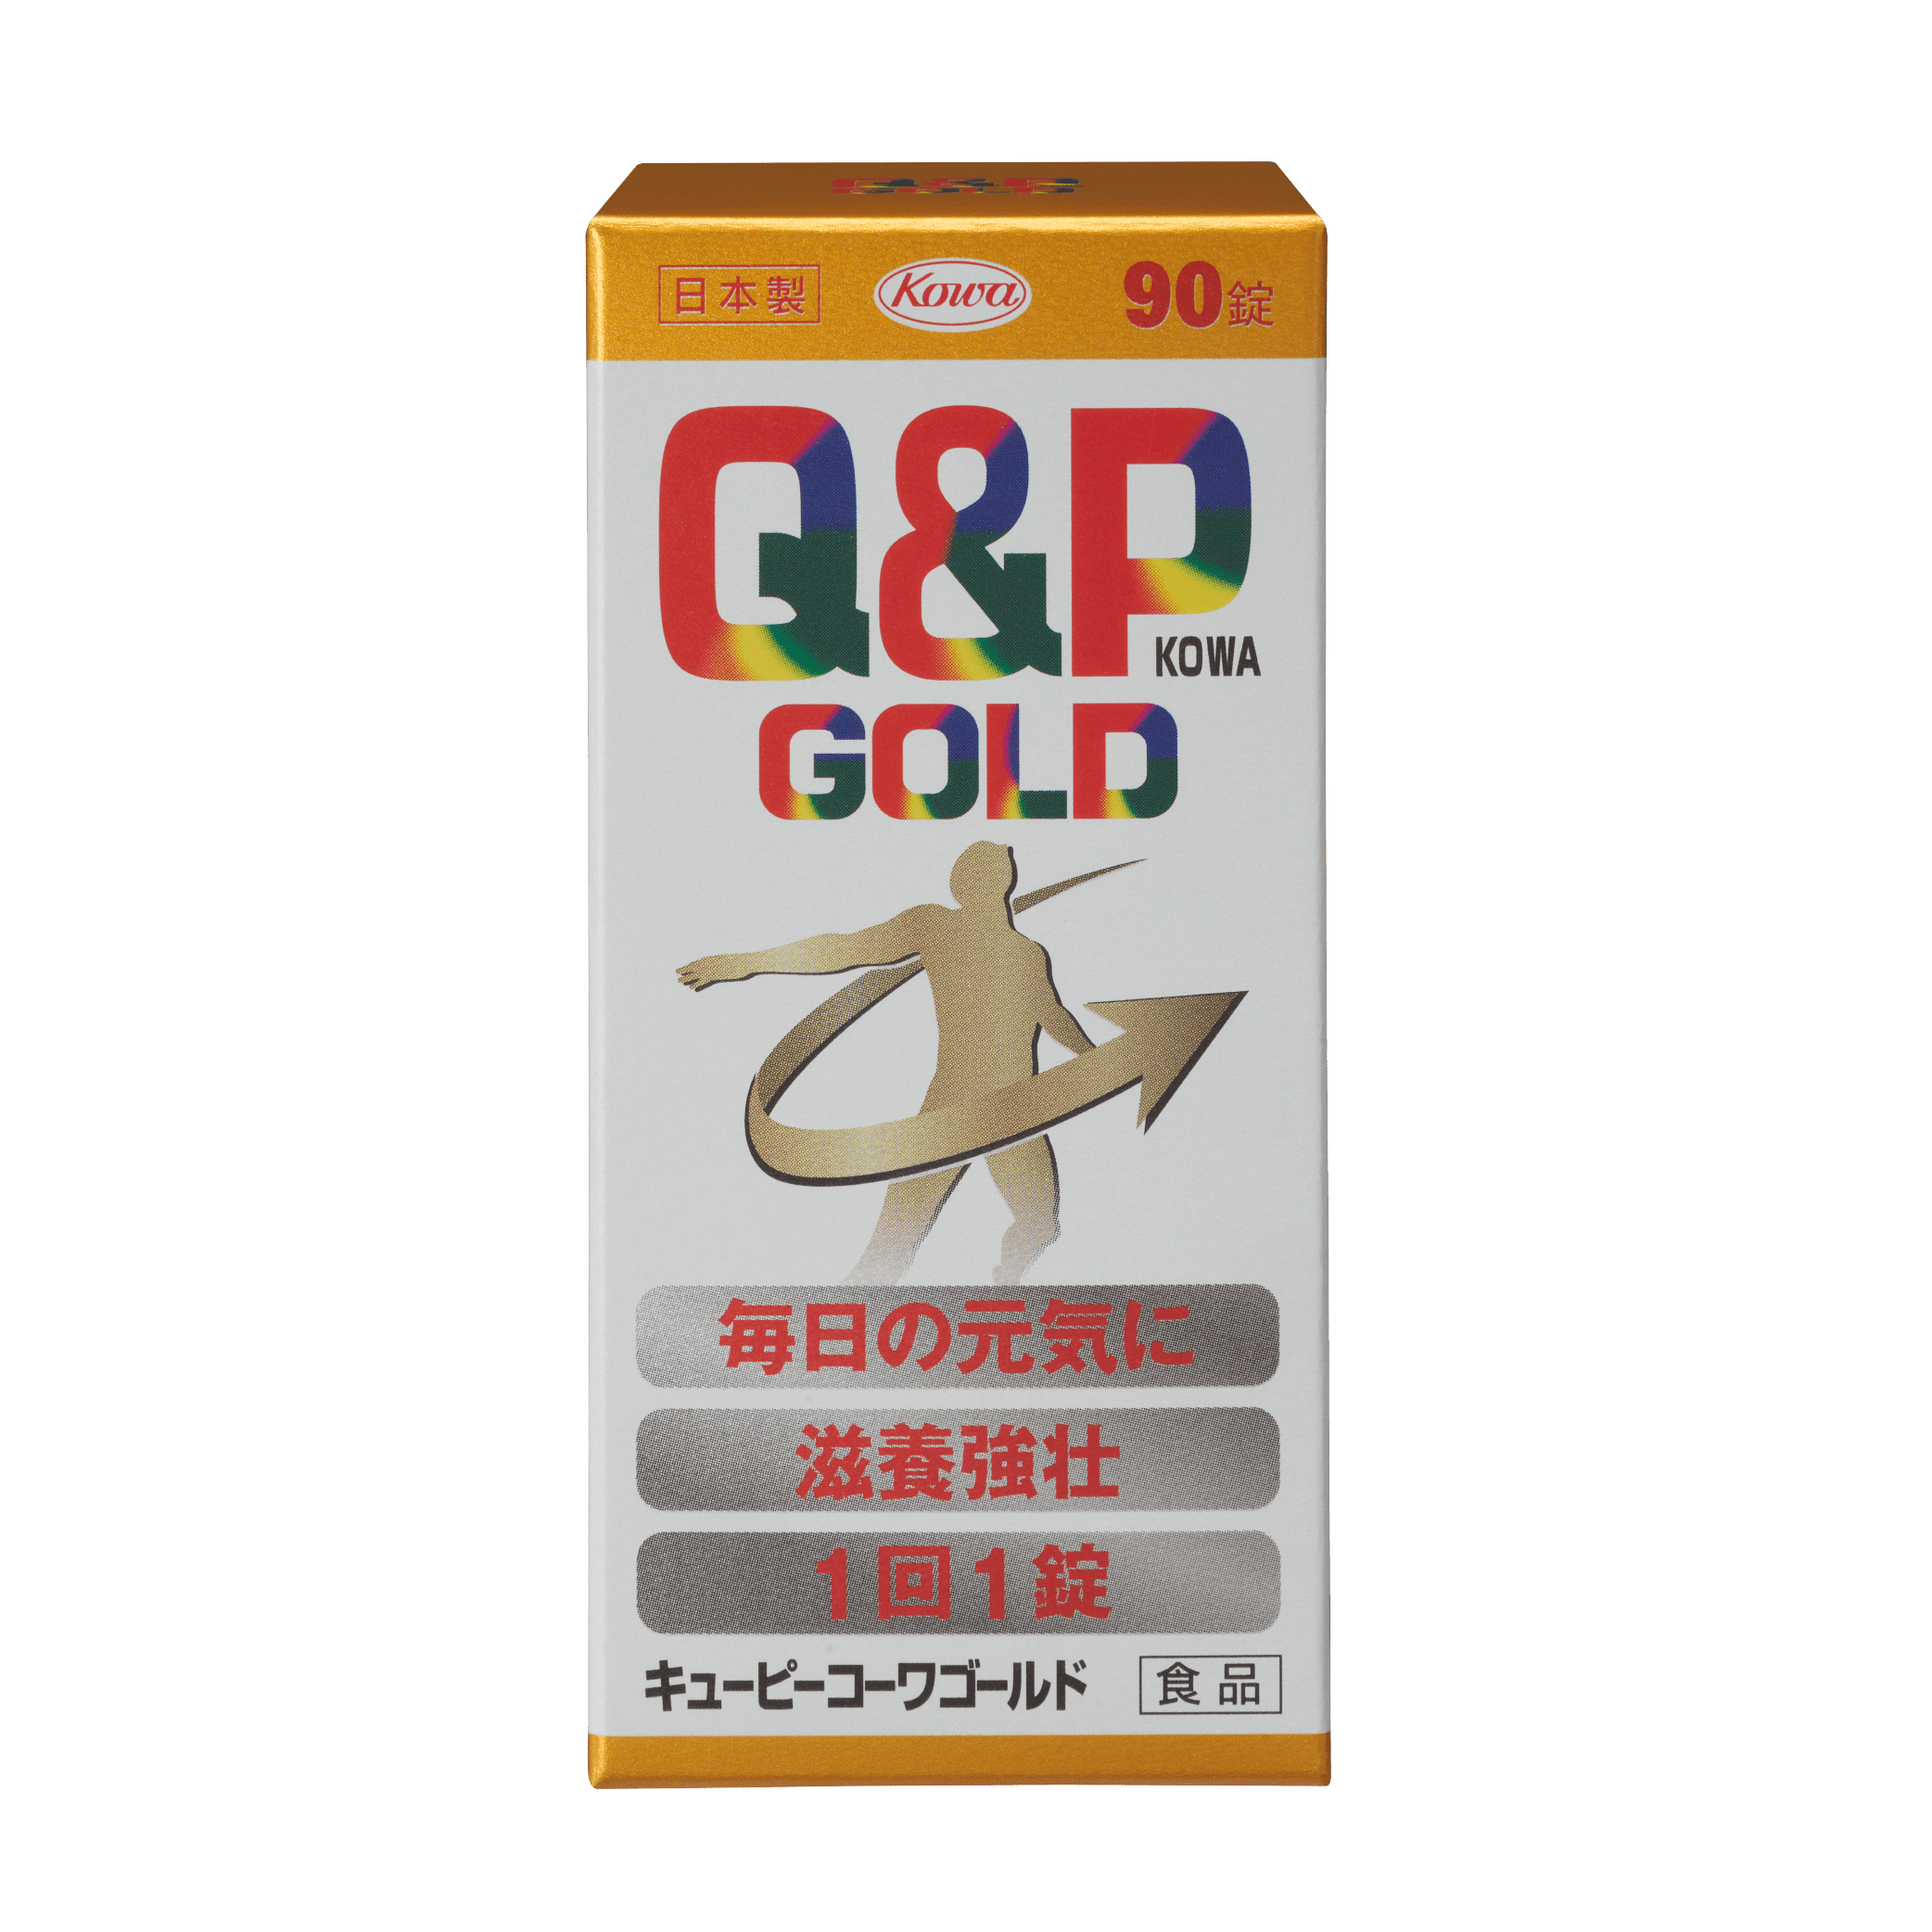  Q&P GOLD_90T外盒